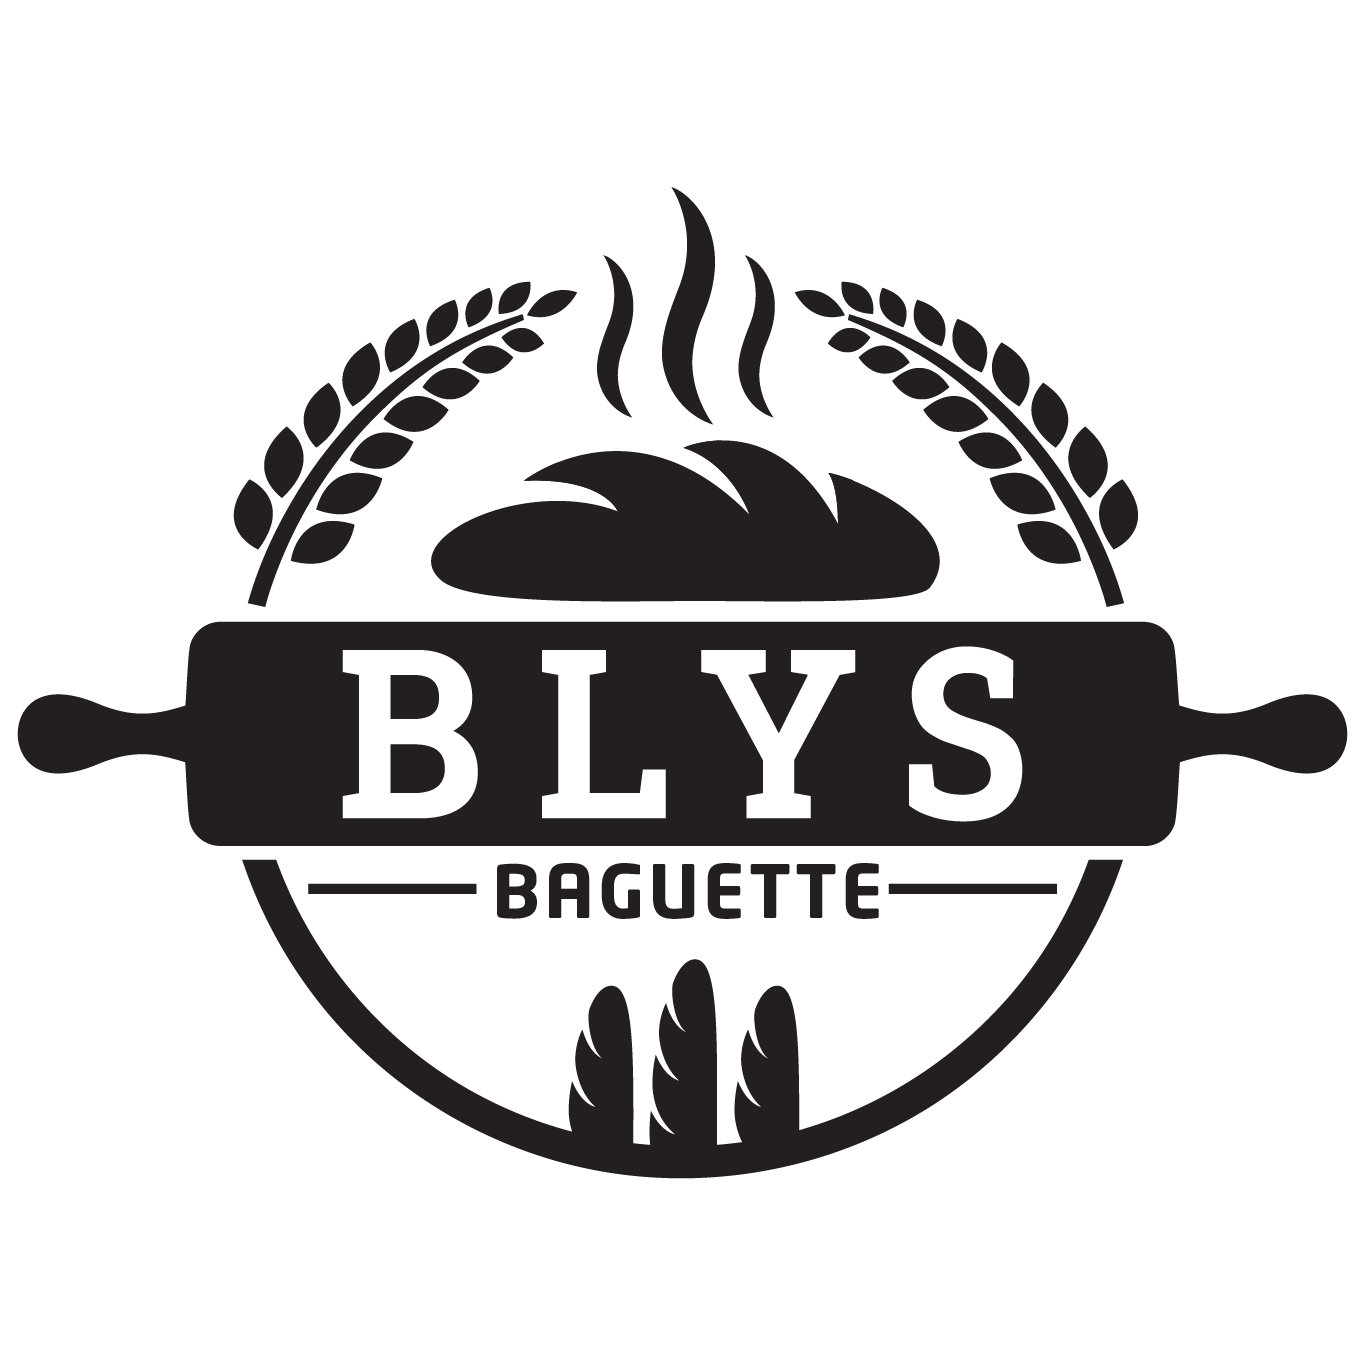 B ly's Baguette - Logo